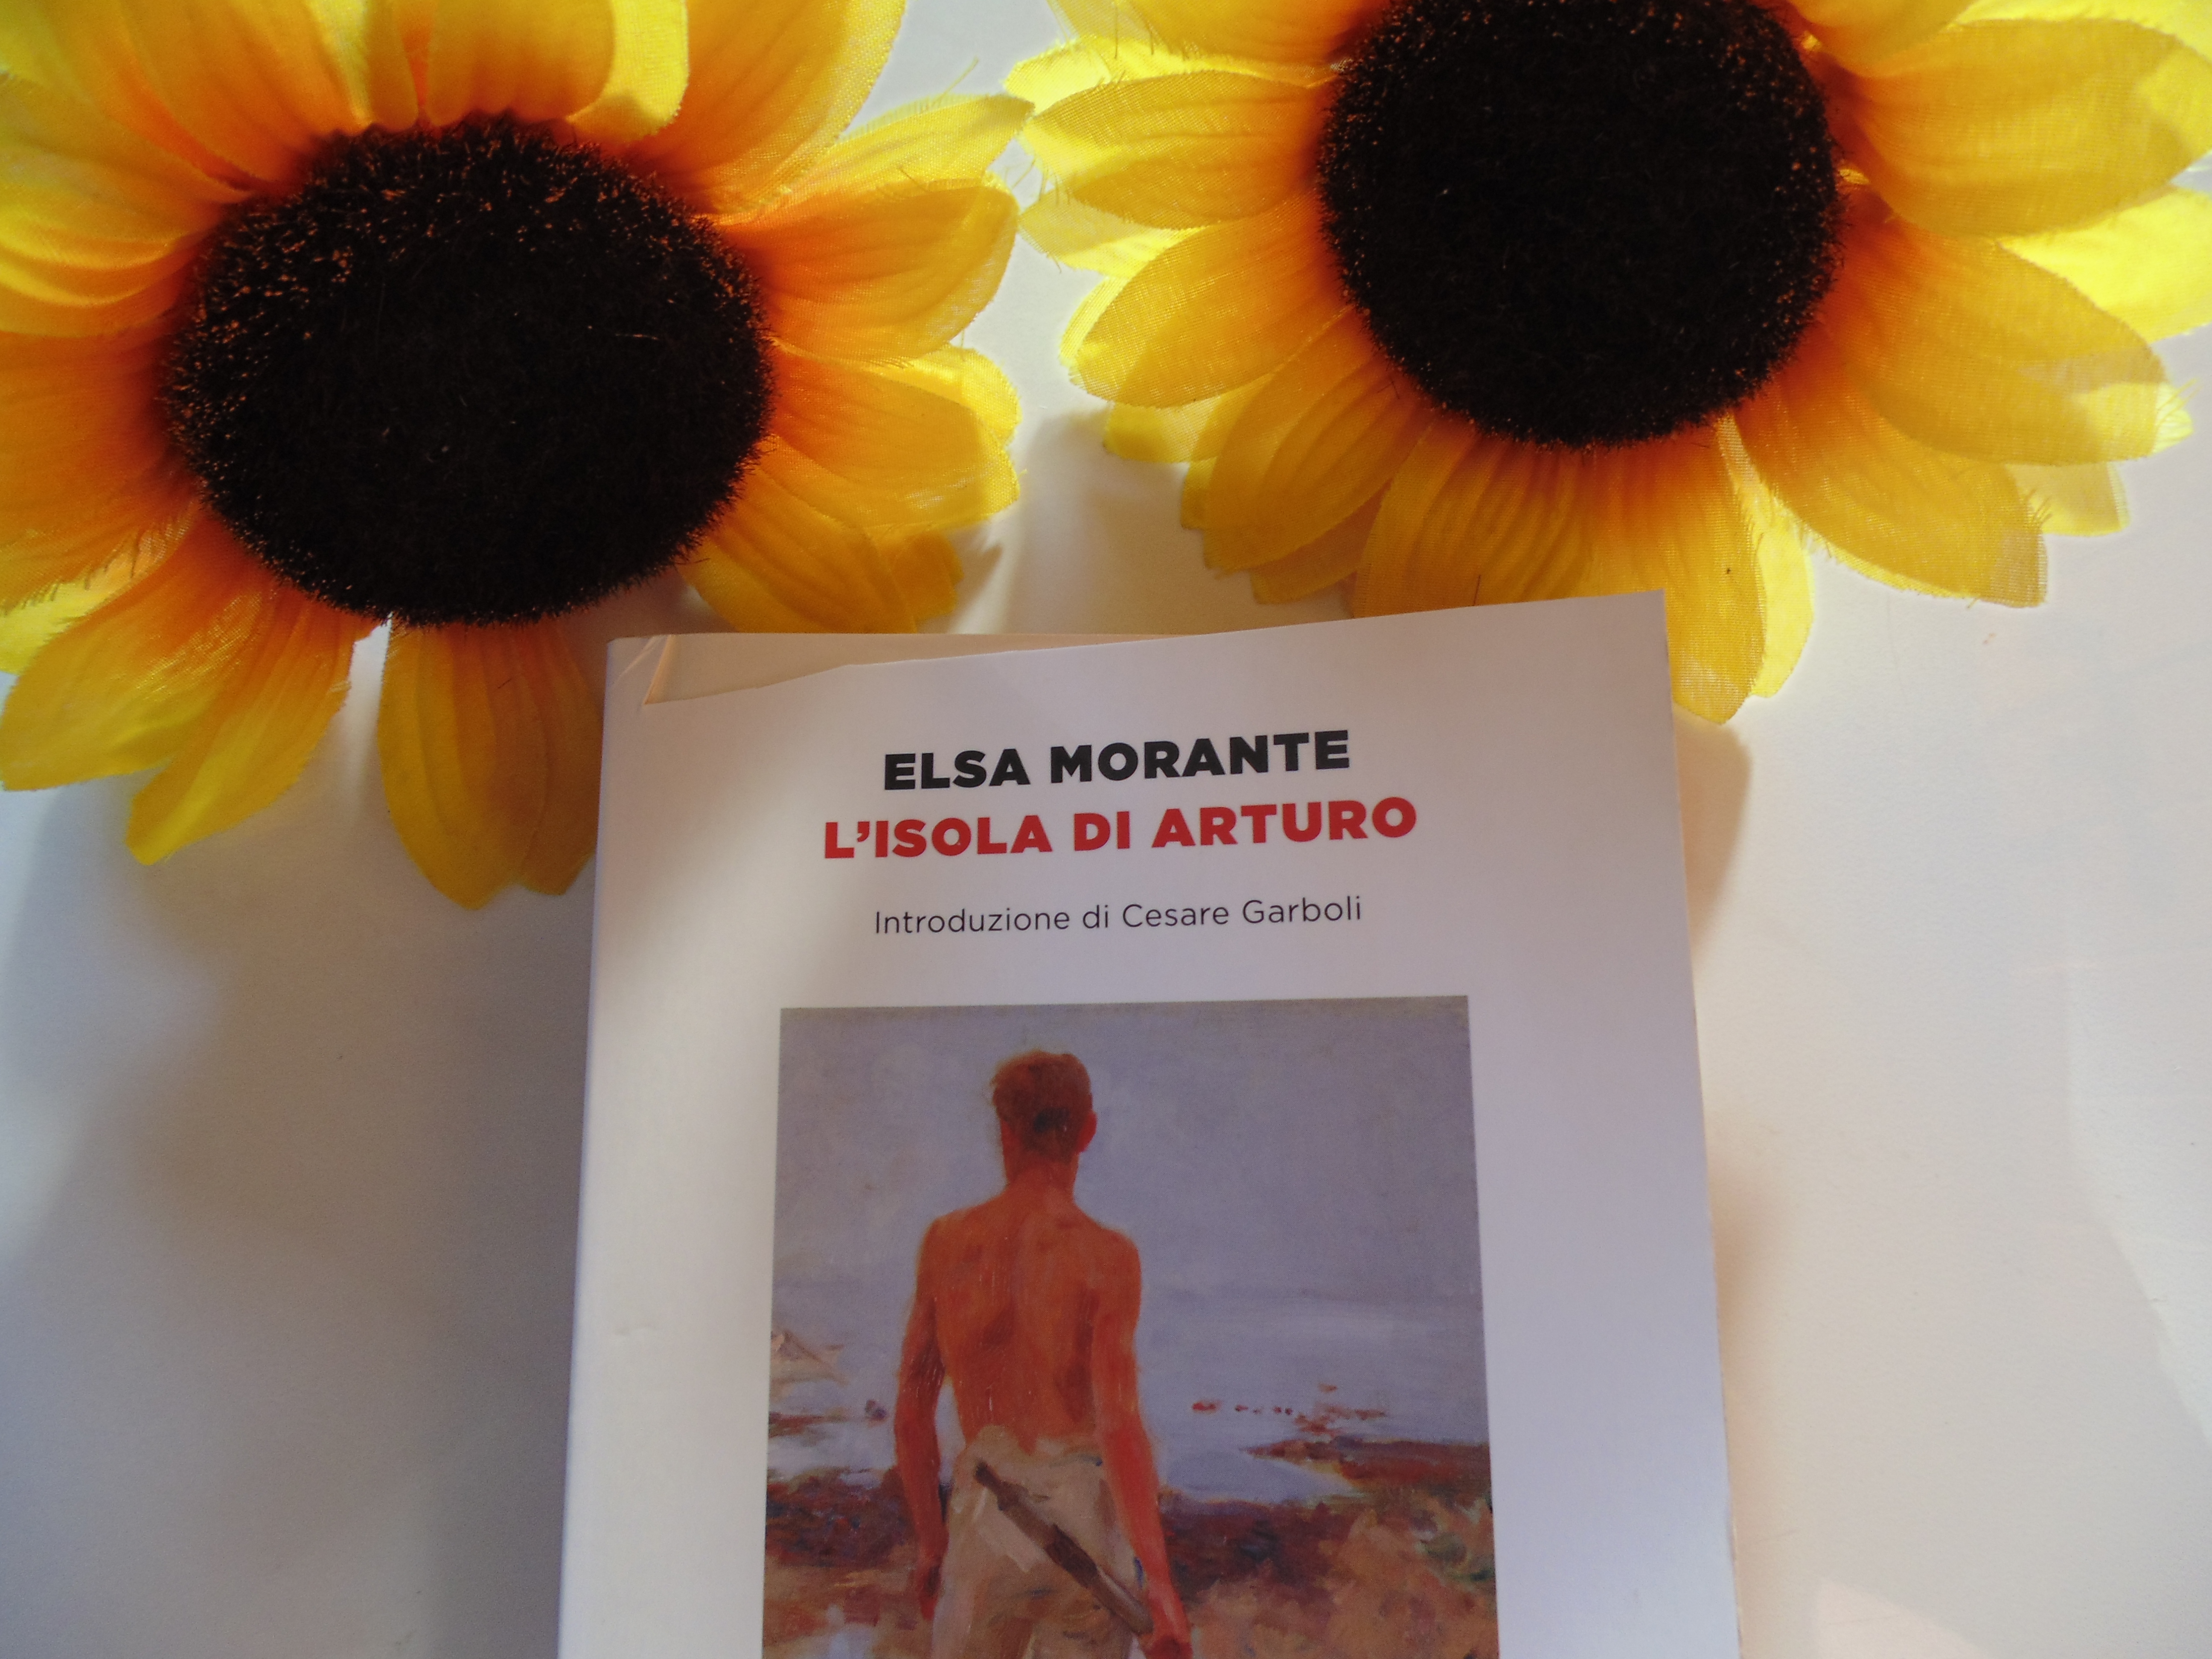 L'isola di Arturo (Elsa Morante) – nunybookblog